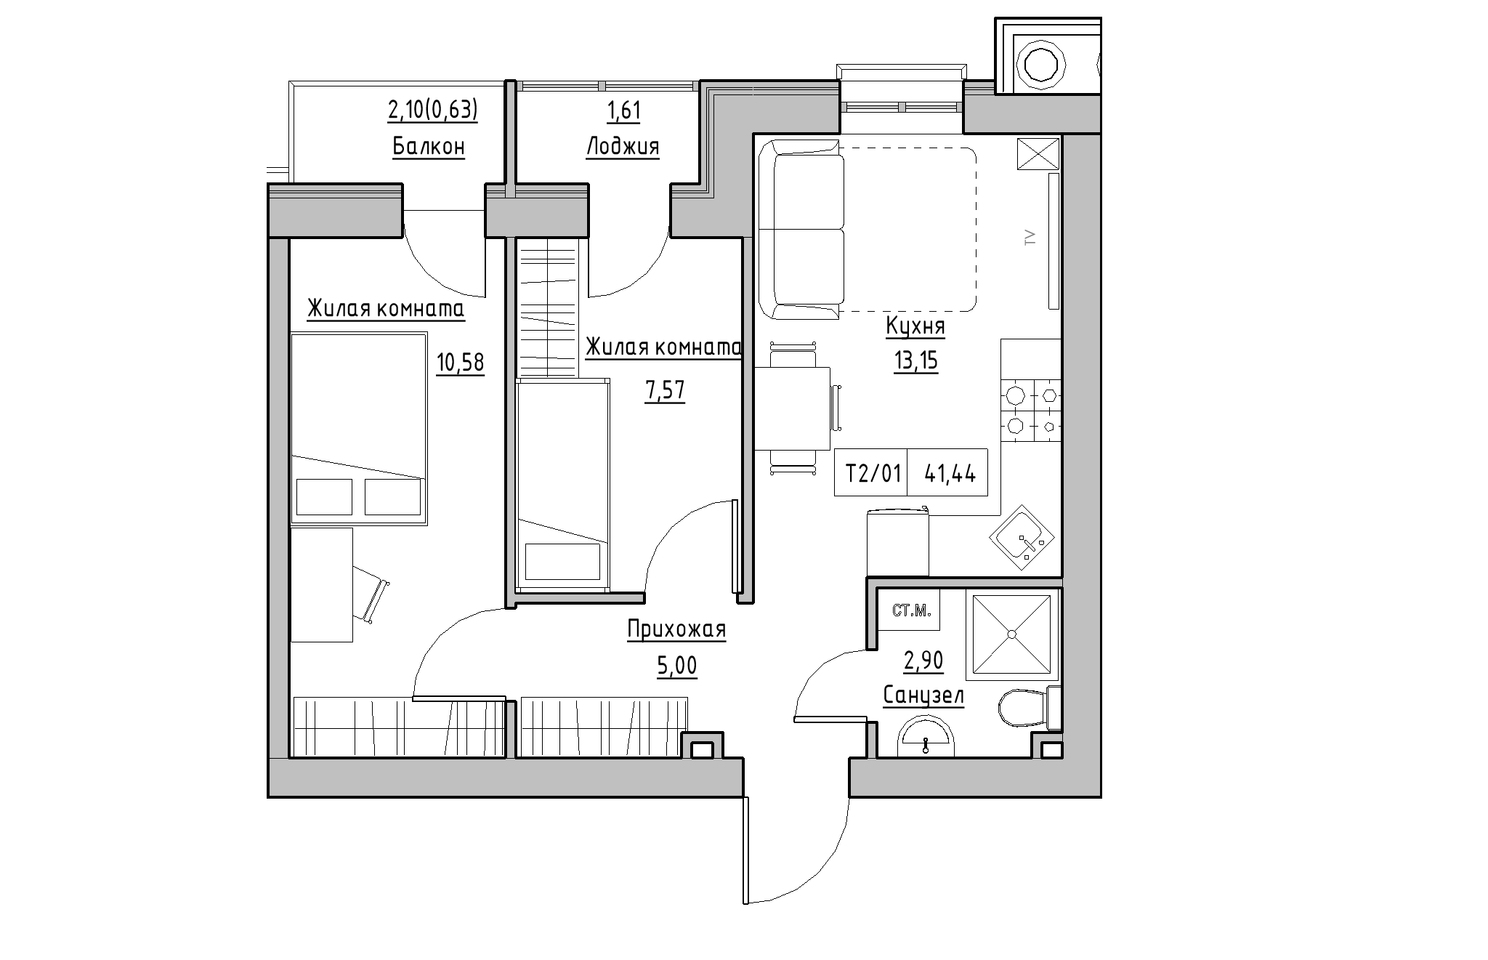 Планування 2-к квартира площею 41.44м2, KS-010-02/0005.